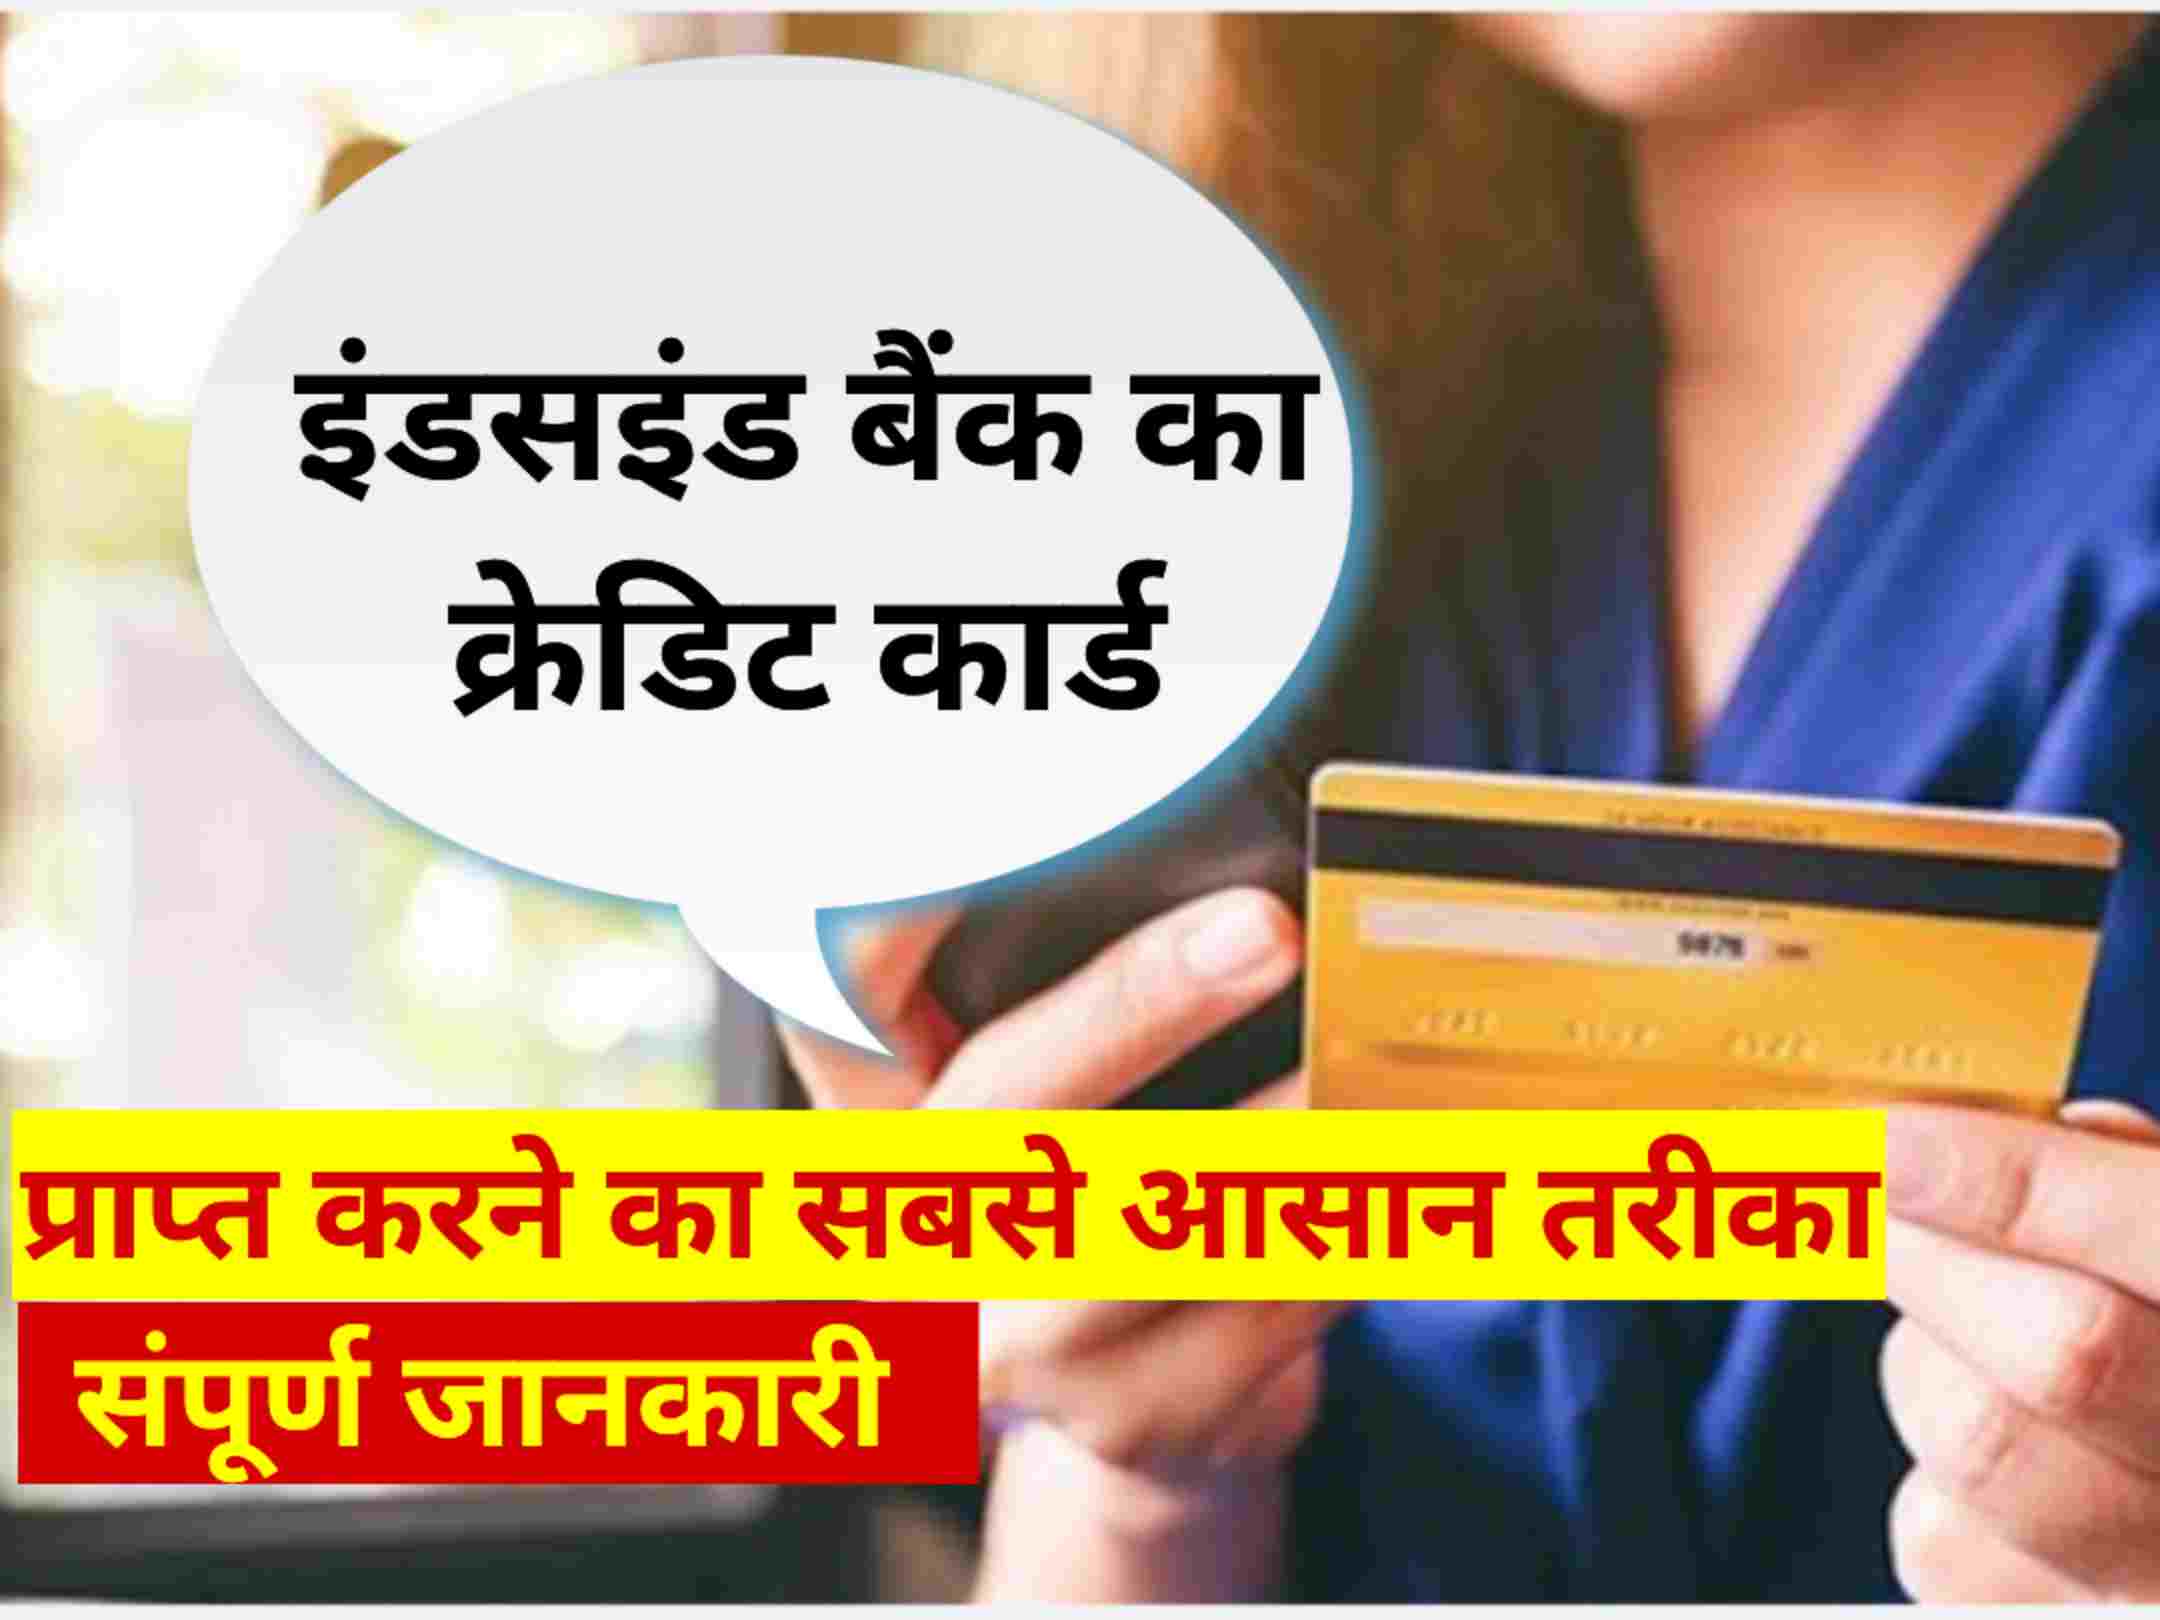 इंडसइंड बैंक से क्रेडिट कार्ड कैसे लें / IndusInd Bank se credit card Kaise len